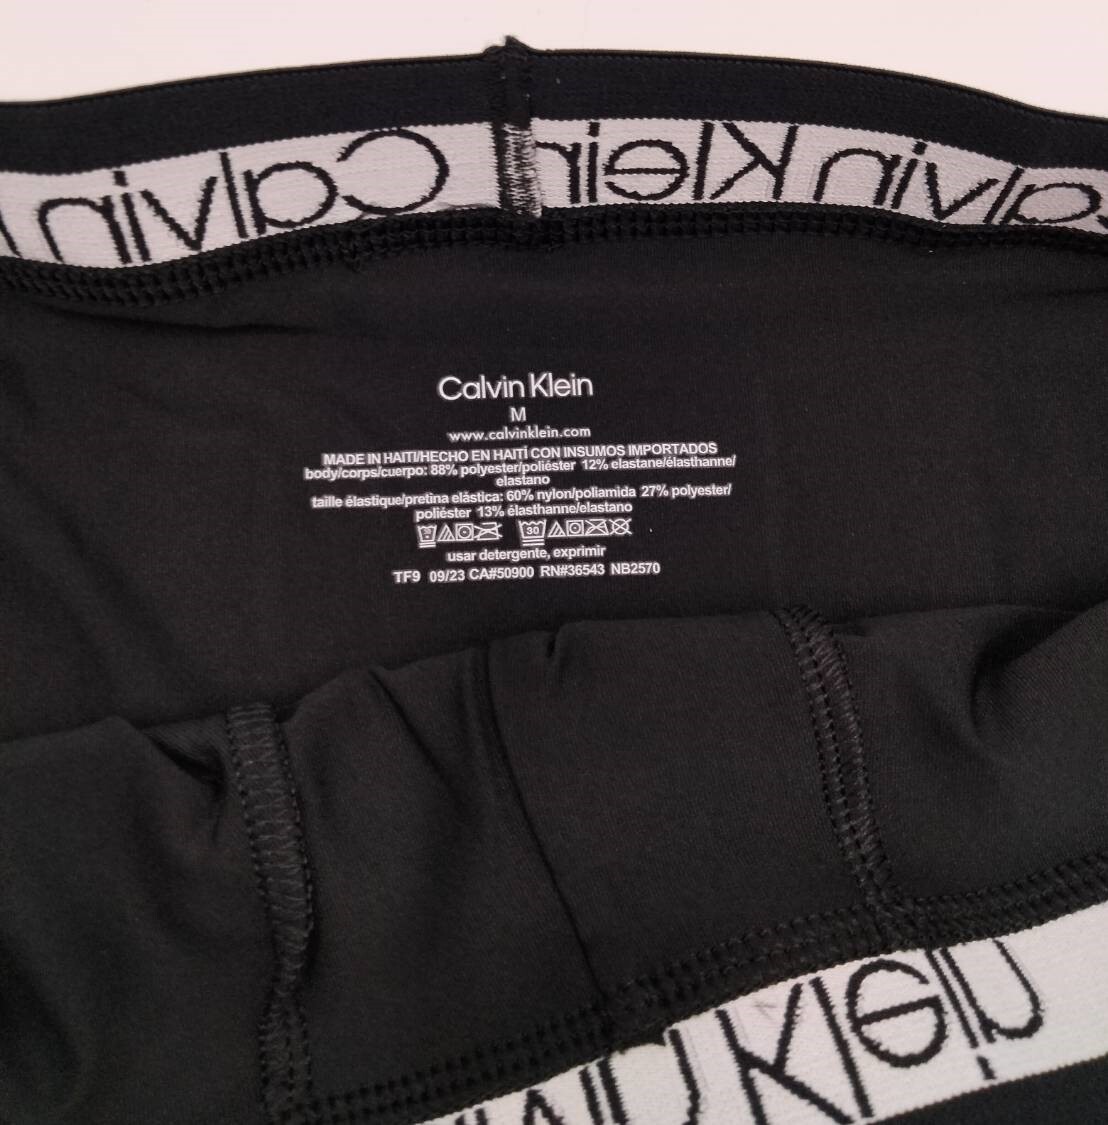 【Mサイズ】Calvin Klein(カルバンクライン) ボクサーパンツ ブラック 2枚セット メンズボクサーパンツ 男性下着 NB2570